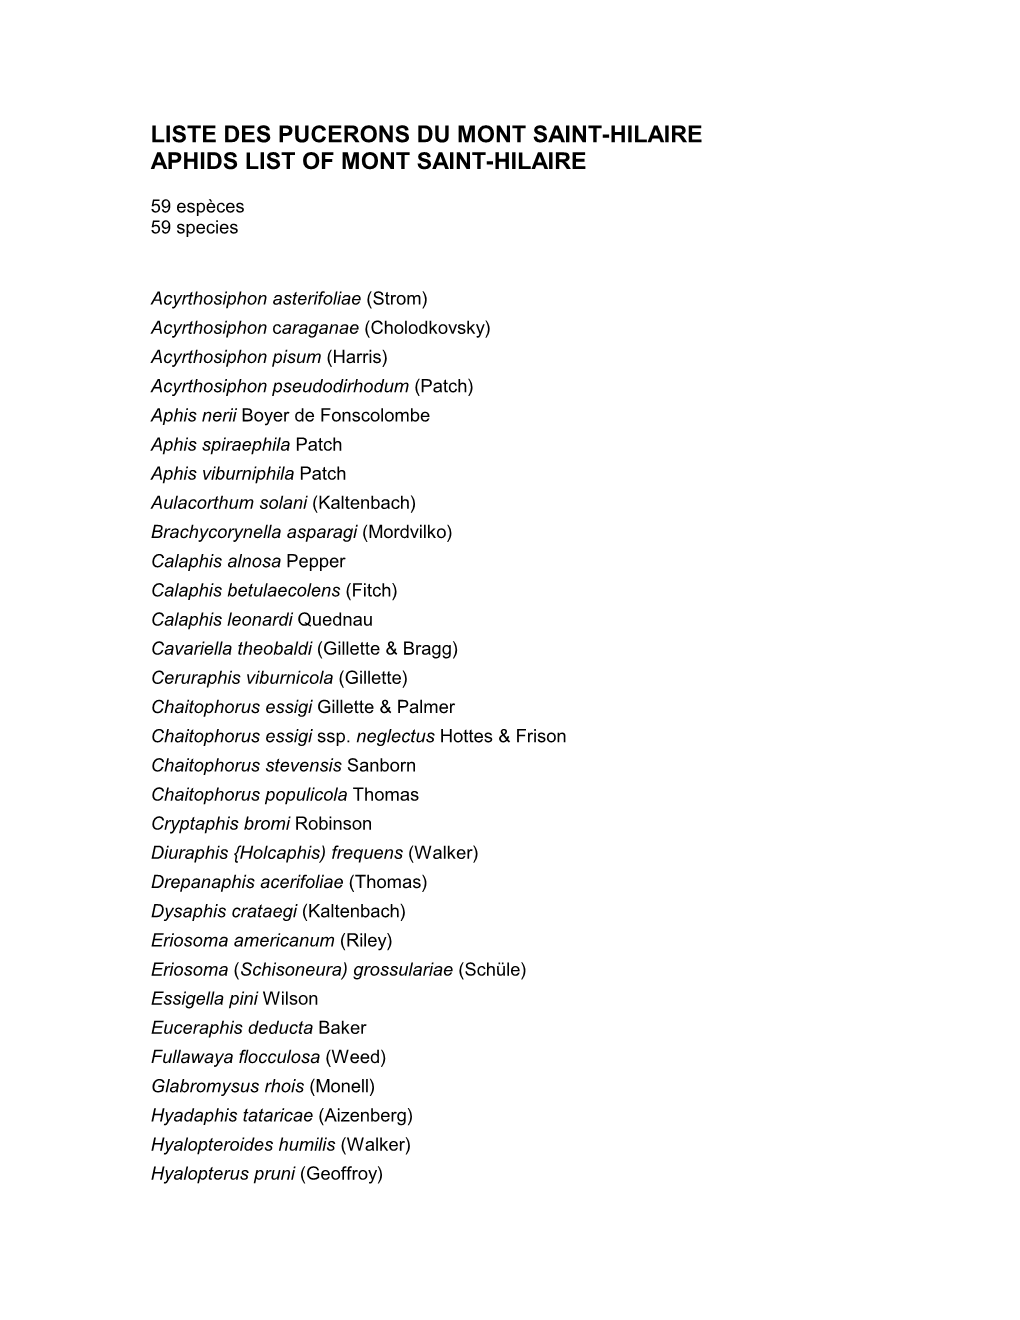 Liste Des Pucerons Du Mont Saint-Hilaire Aphids List of Mont Saint-Hilaire